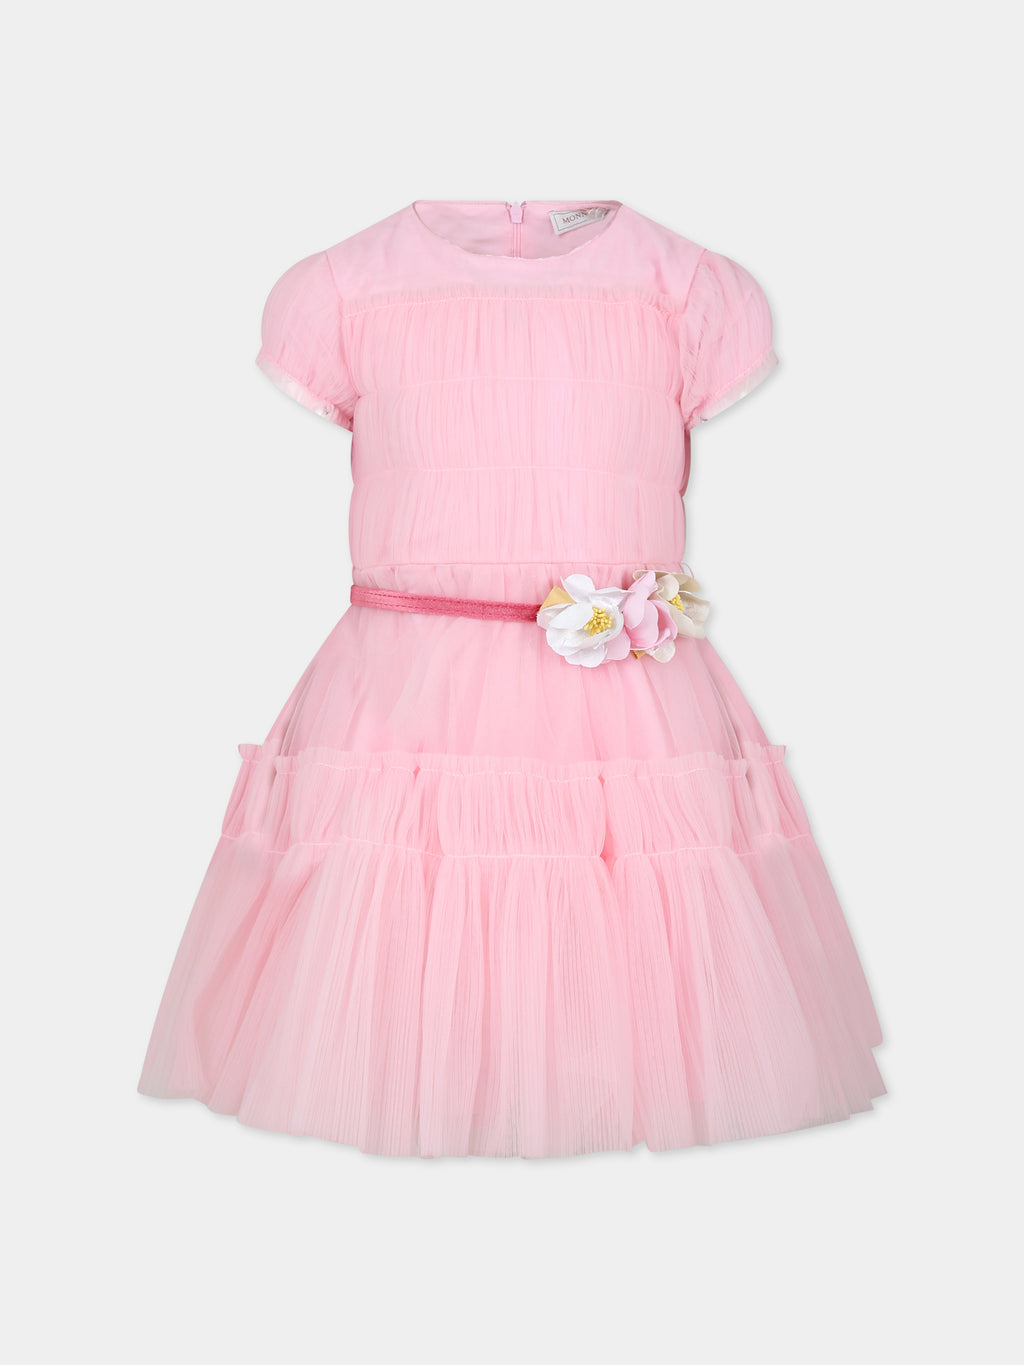 Vestito rosa per bambina con fiori